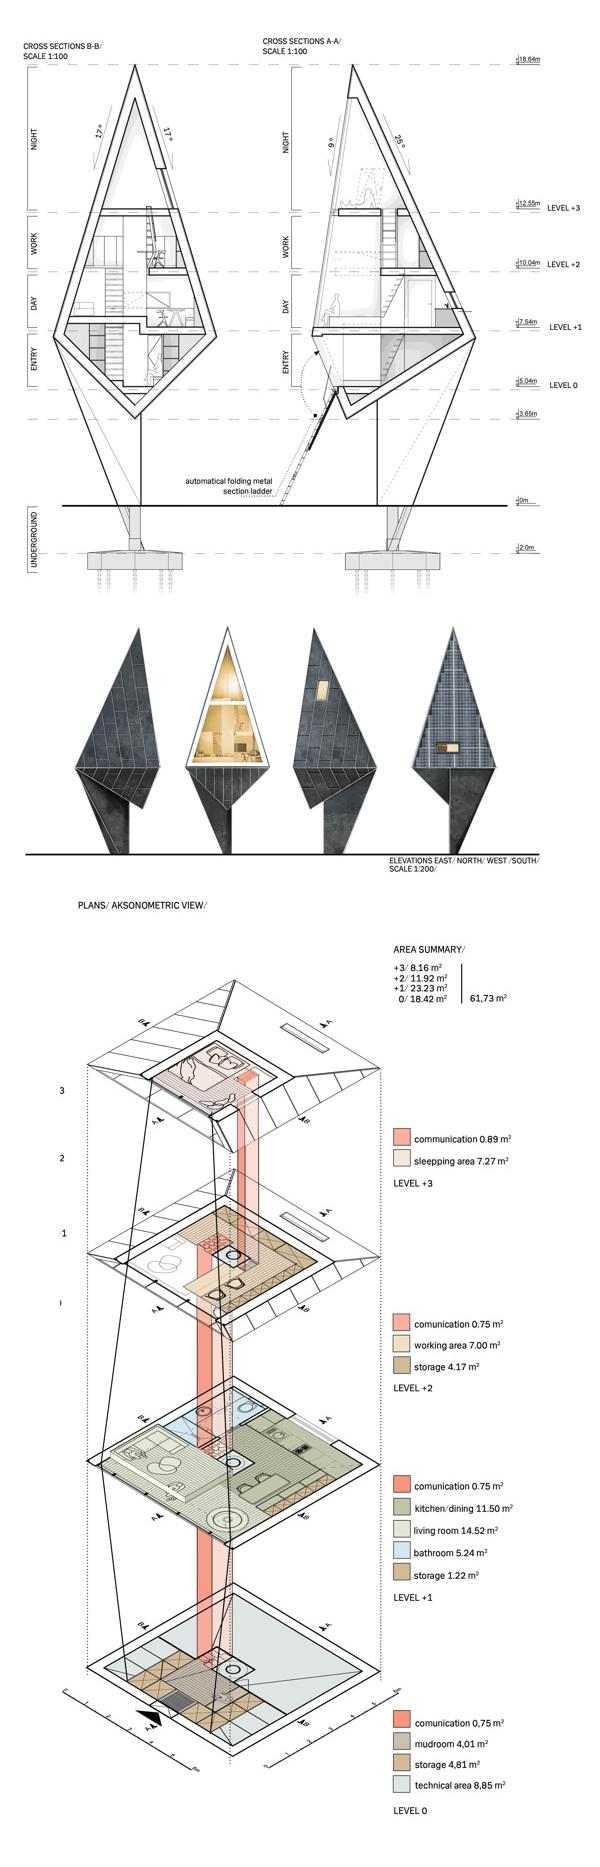 البيت السلبي Konrad-Wójcik مفهوم المشروع التصورات ثلاثية الأبعاد العمارة